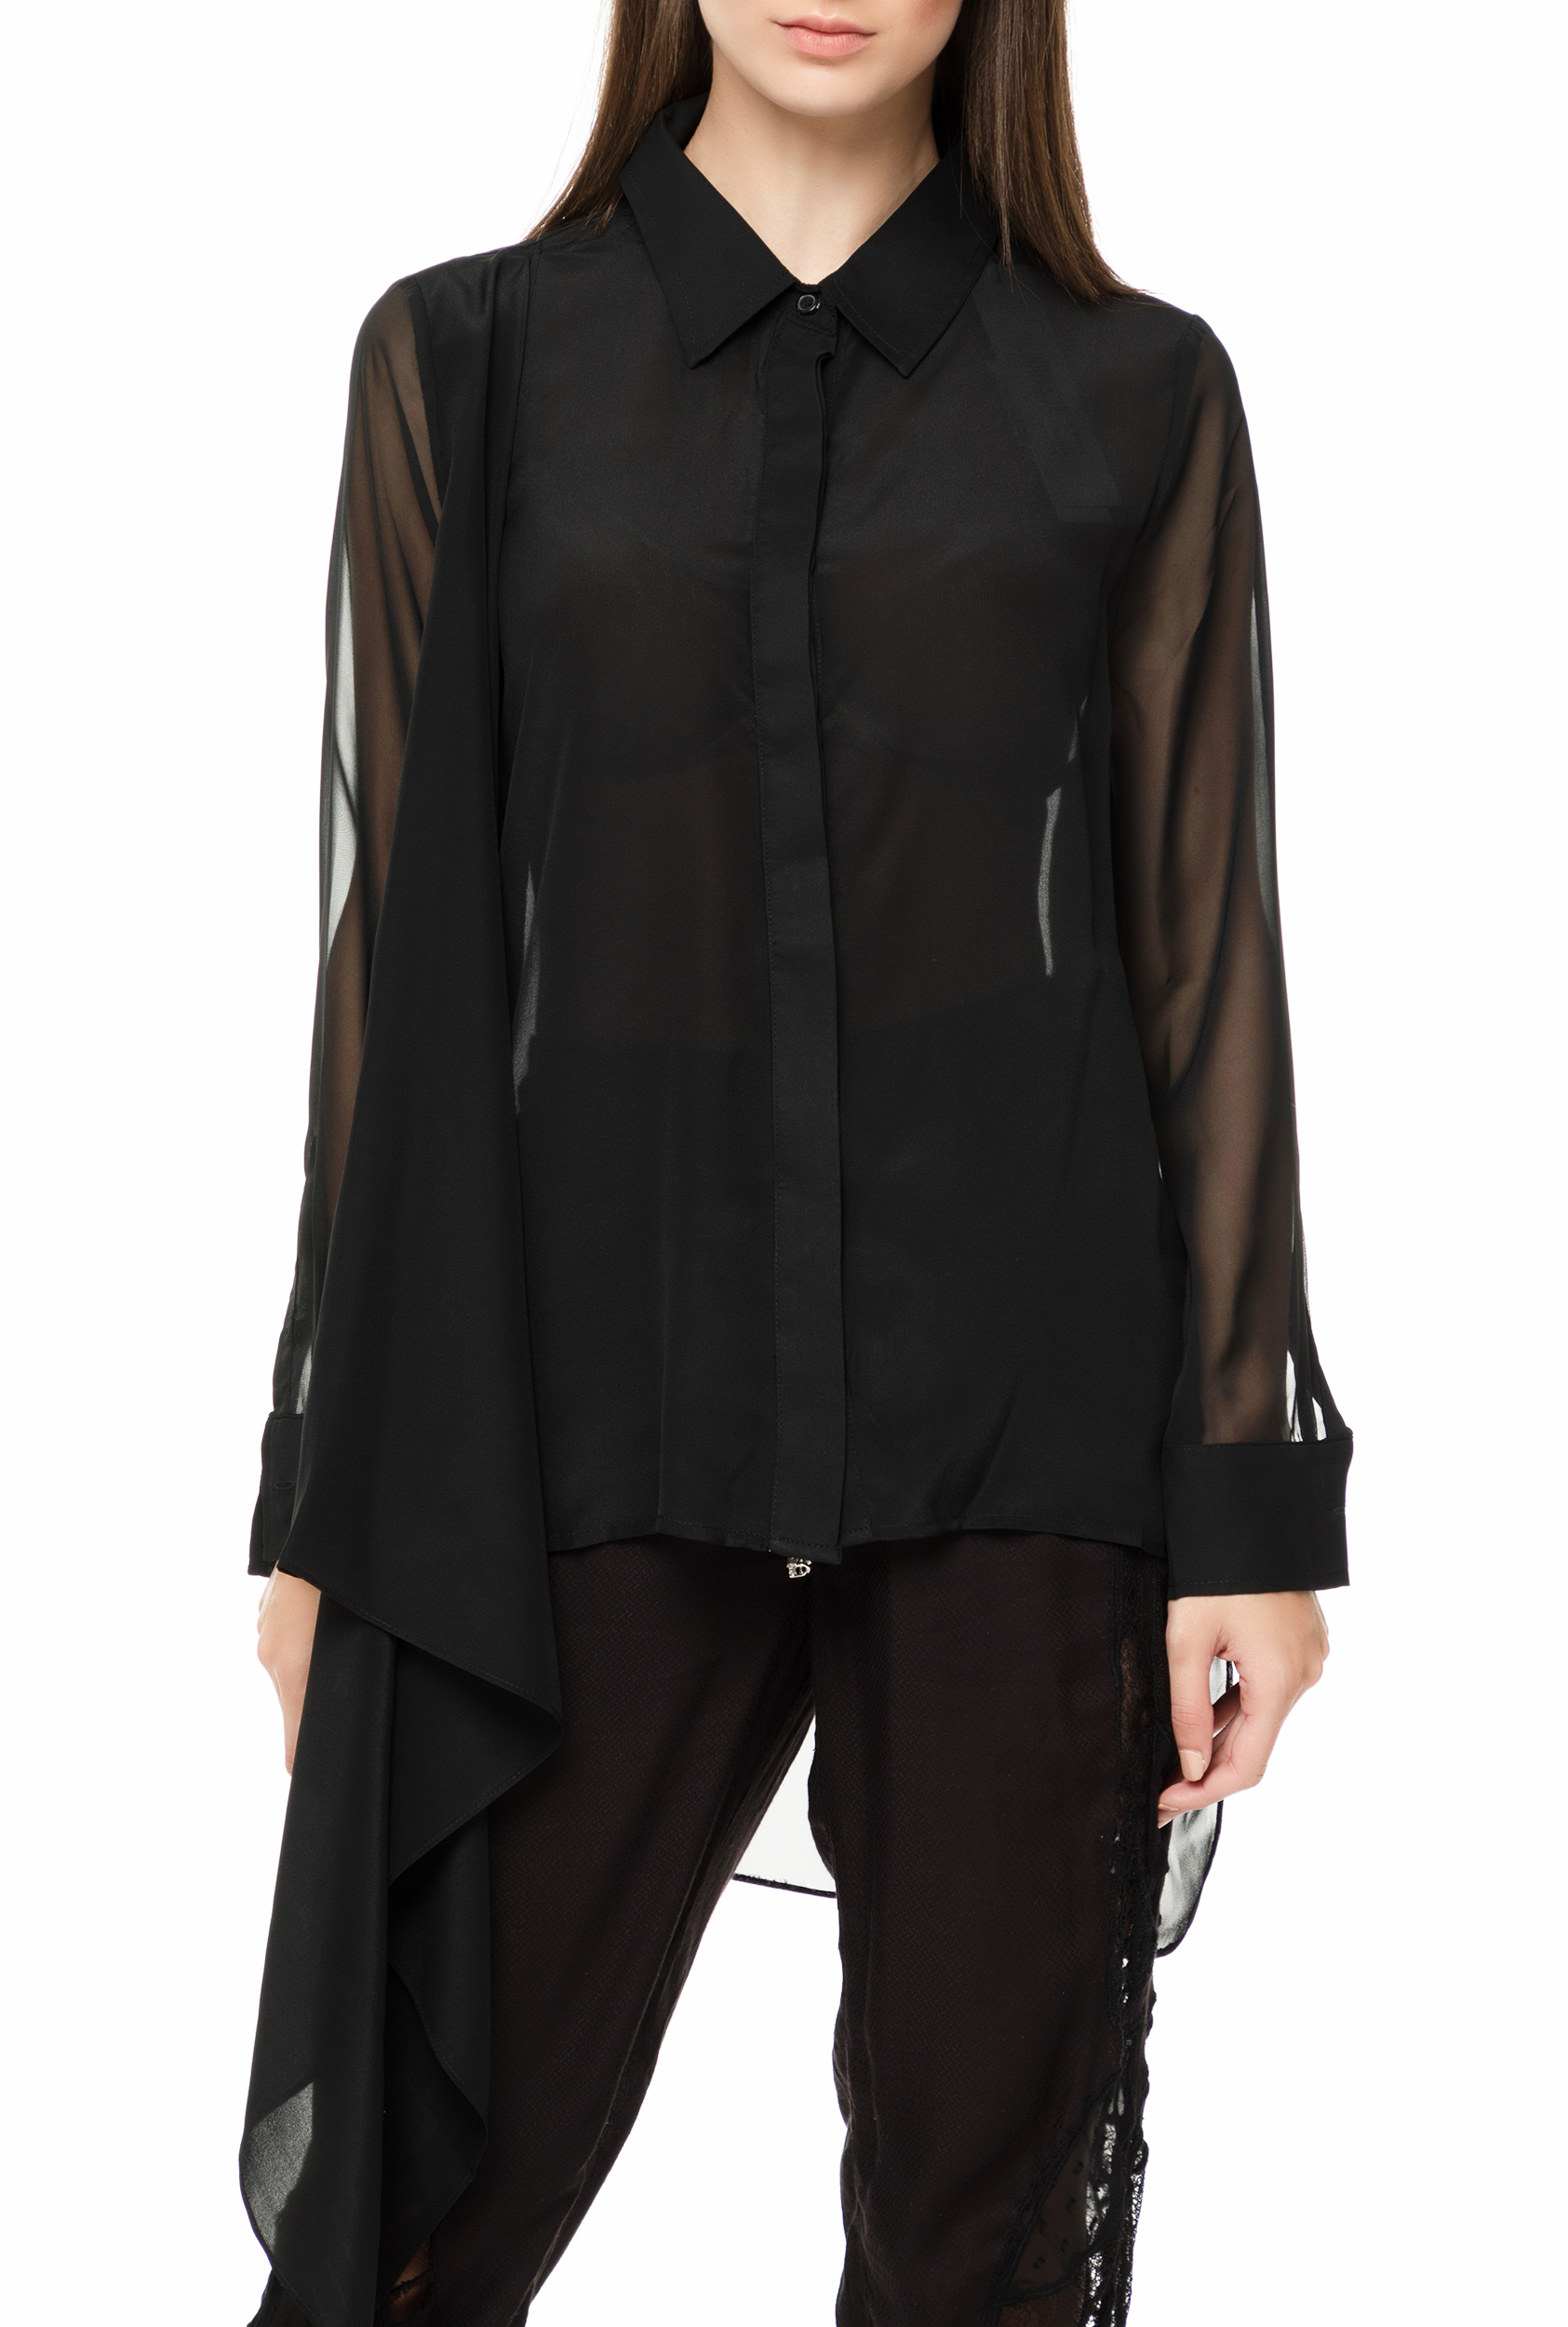 Γυναικεία/Ρούχα/Πουκάμισα/Μακρυμάνικα RELIGION - Γυναικείο μακρυμάνικο πουκάμισο RELIGION DYNAMIC μαύρο